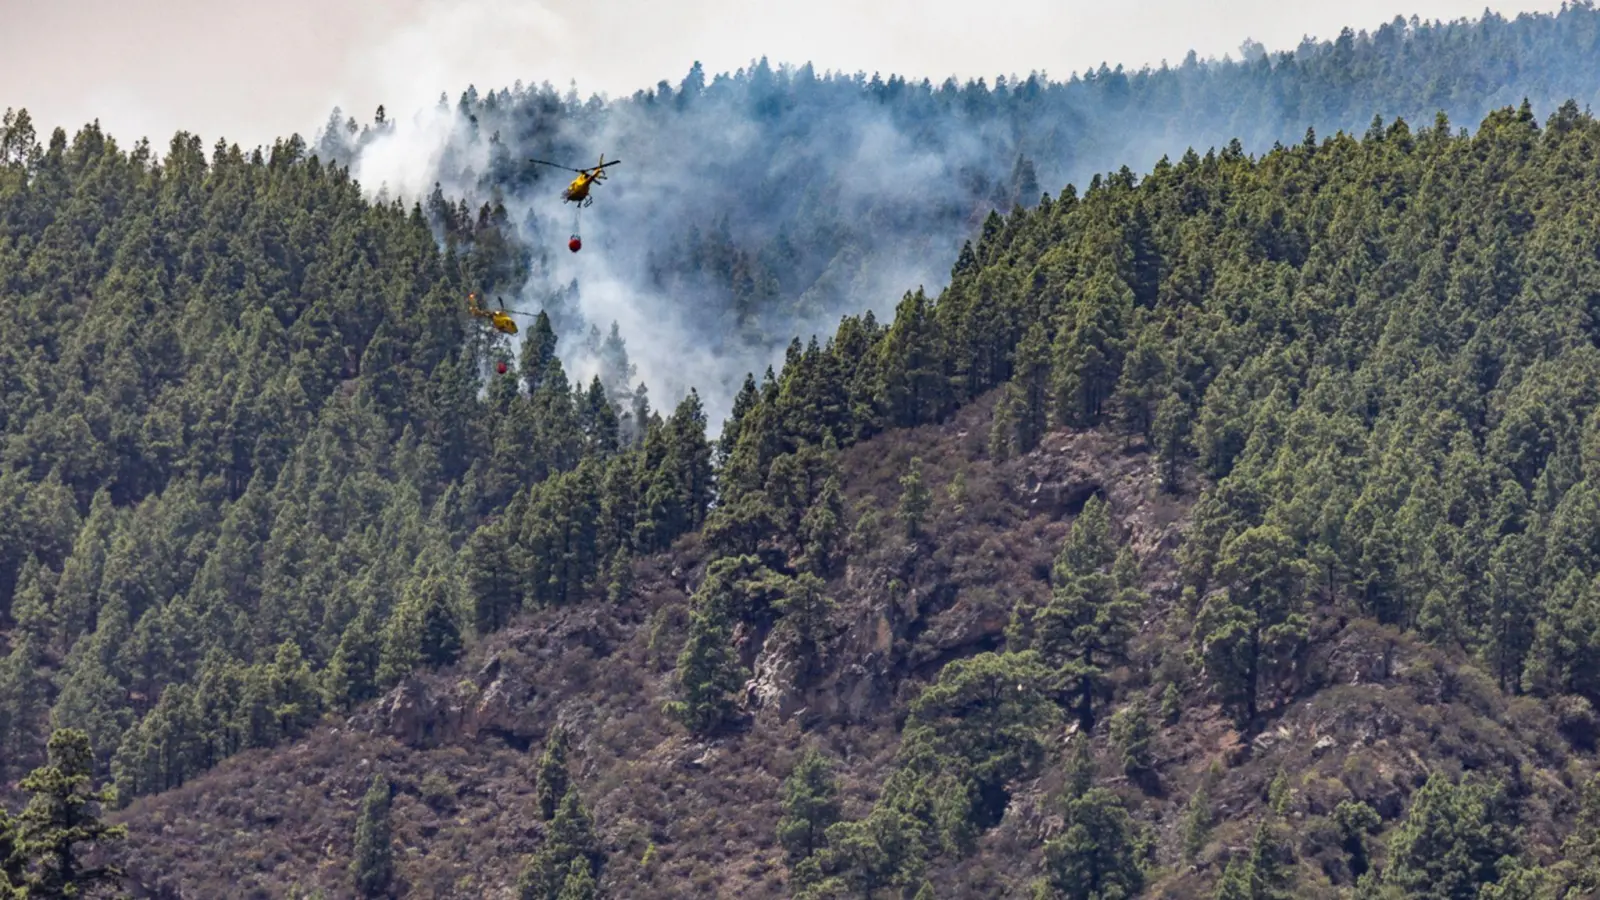 Erst im August hatte es einen verheerenden Waldbrand auf der spanischen Urlaubsinsel gegeben. Wie auf dem Bild zu sehen, waren auch Löschhubschrauber im Einsatz. (Archivbild) (Foto: Europa Press/EUROPA PRESS/dpa)